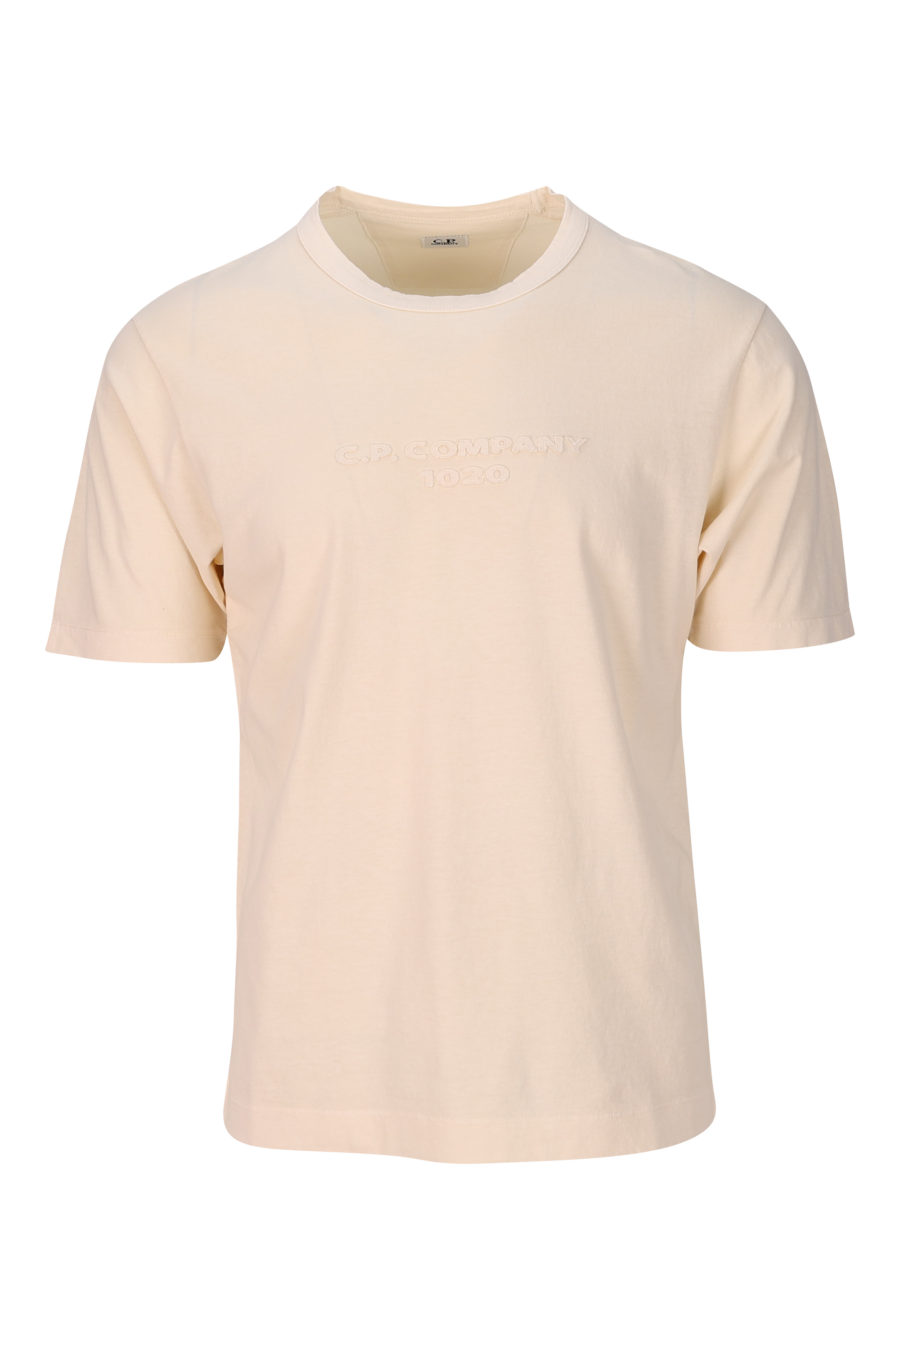 Camiseta beige con maxilogo monocromático bordado "1020" - 7620943818420